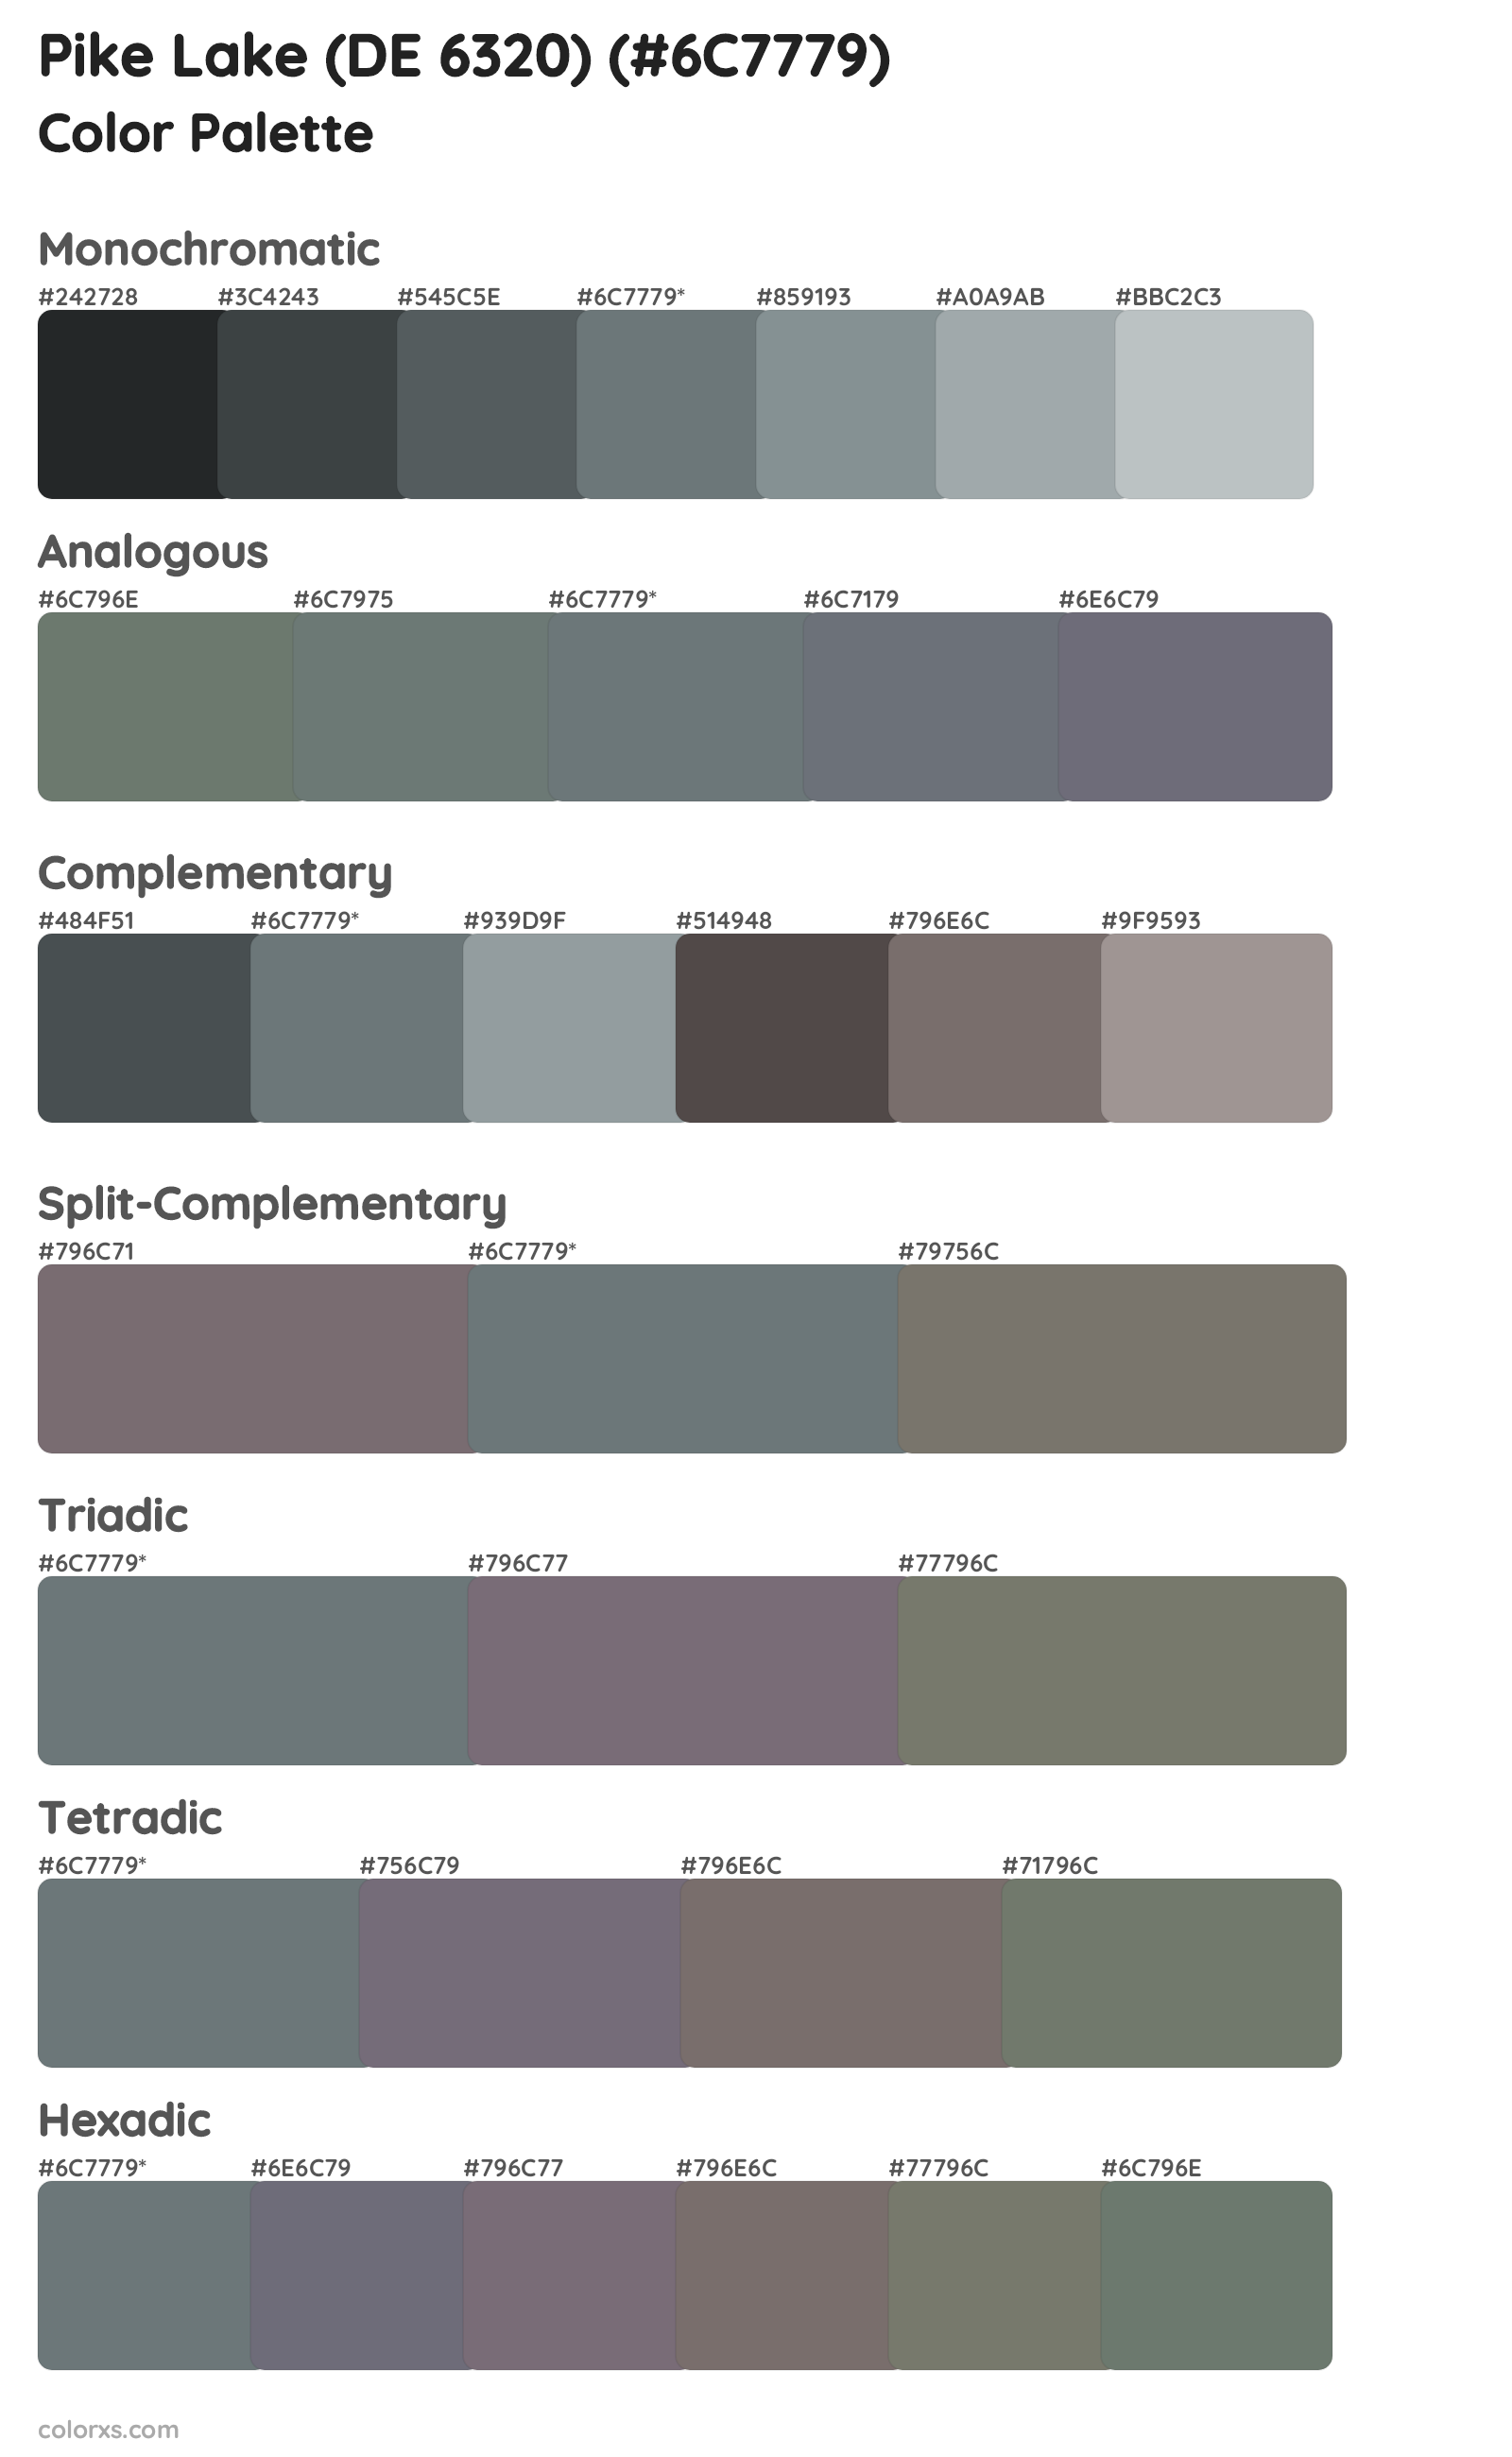 Pike Lake (DE 6320) Color Scheme Palettes